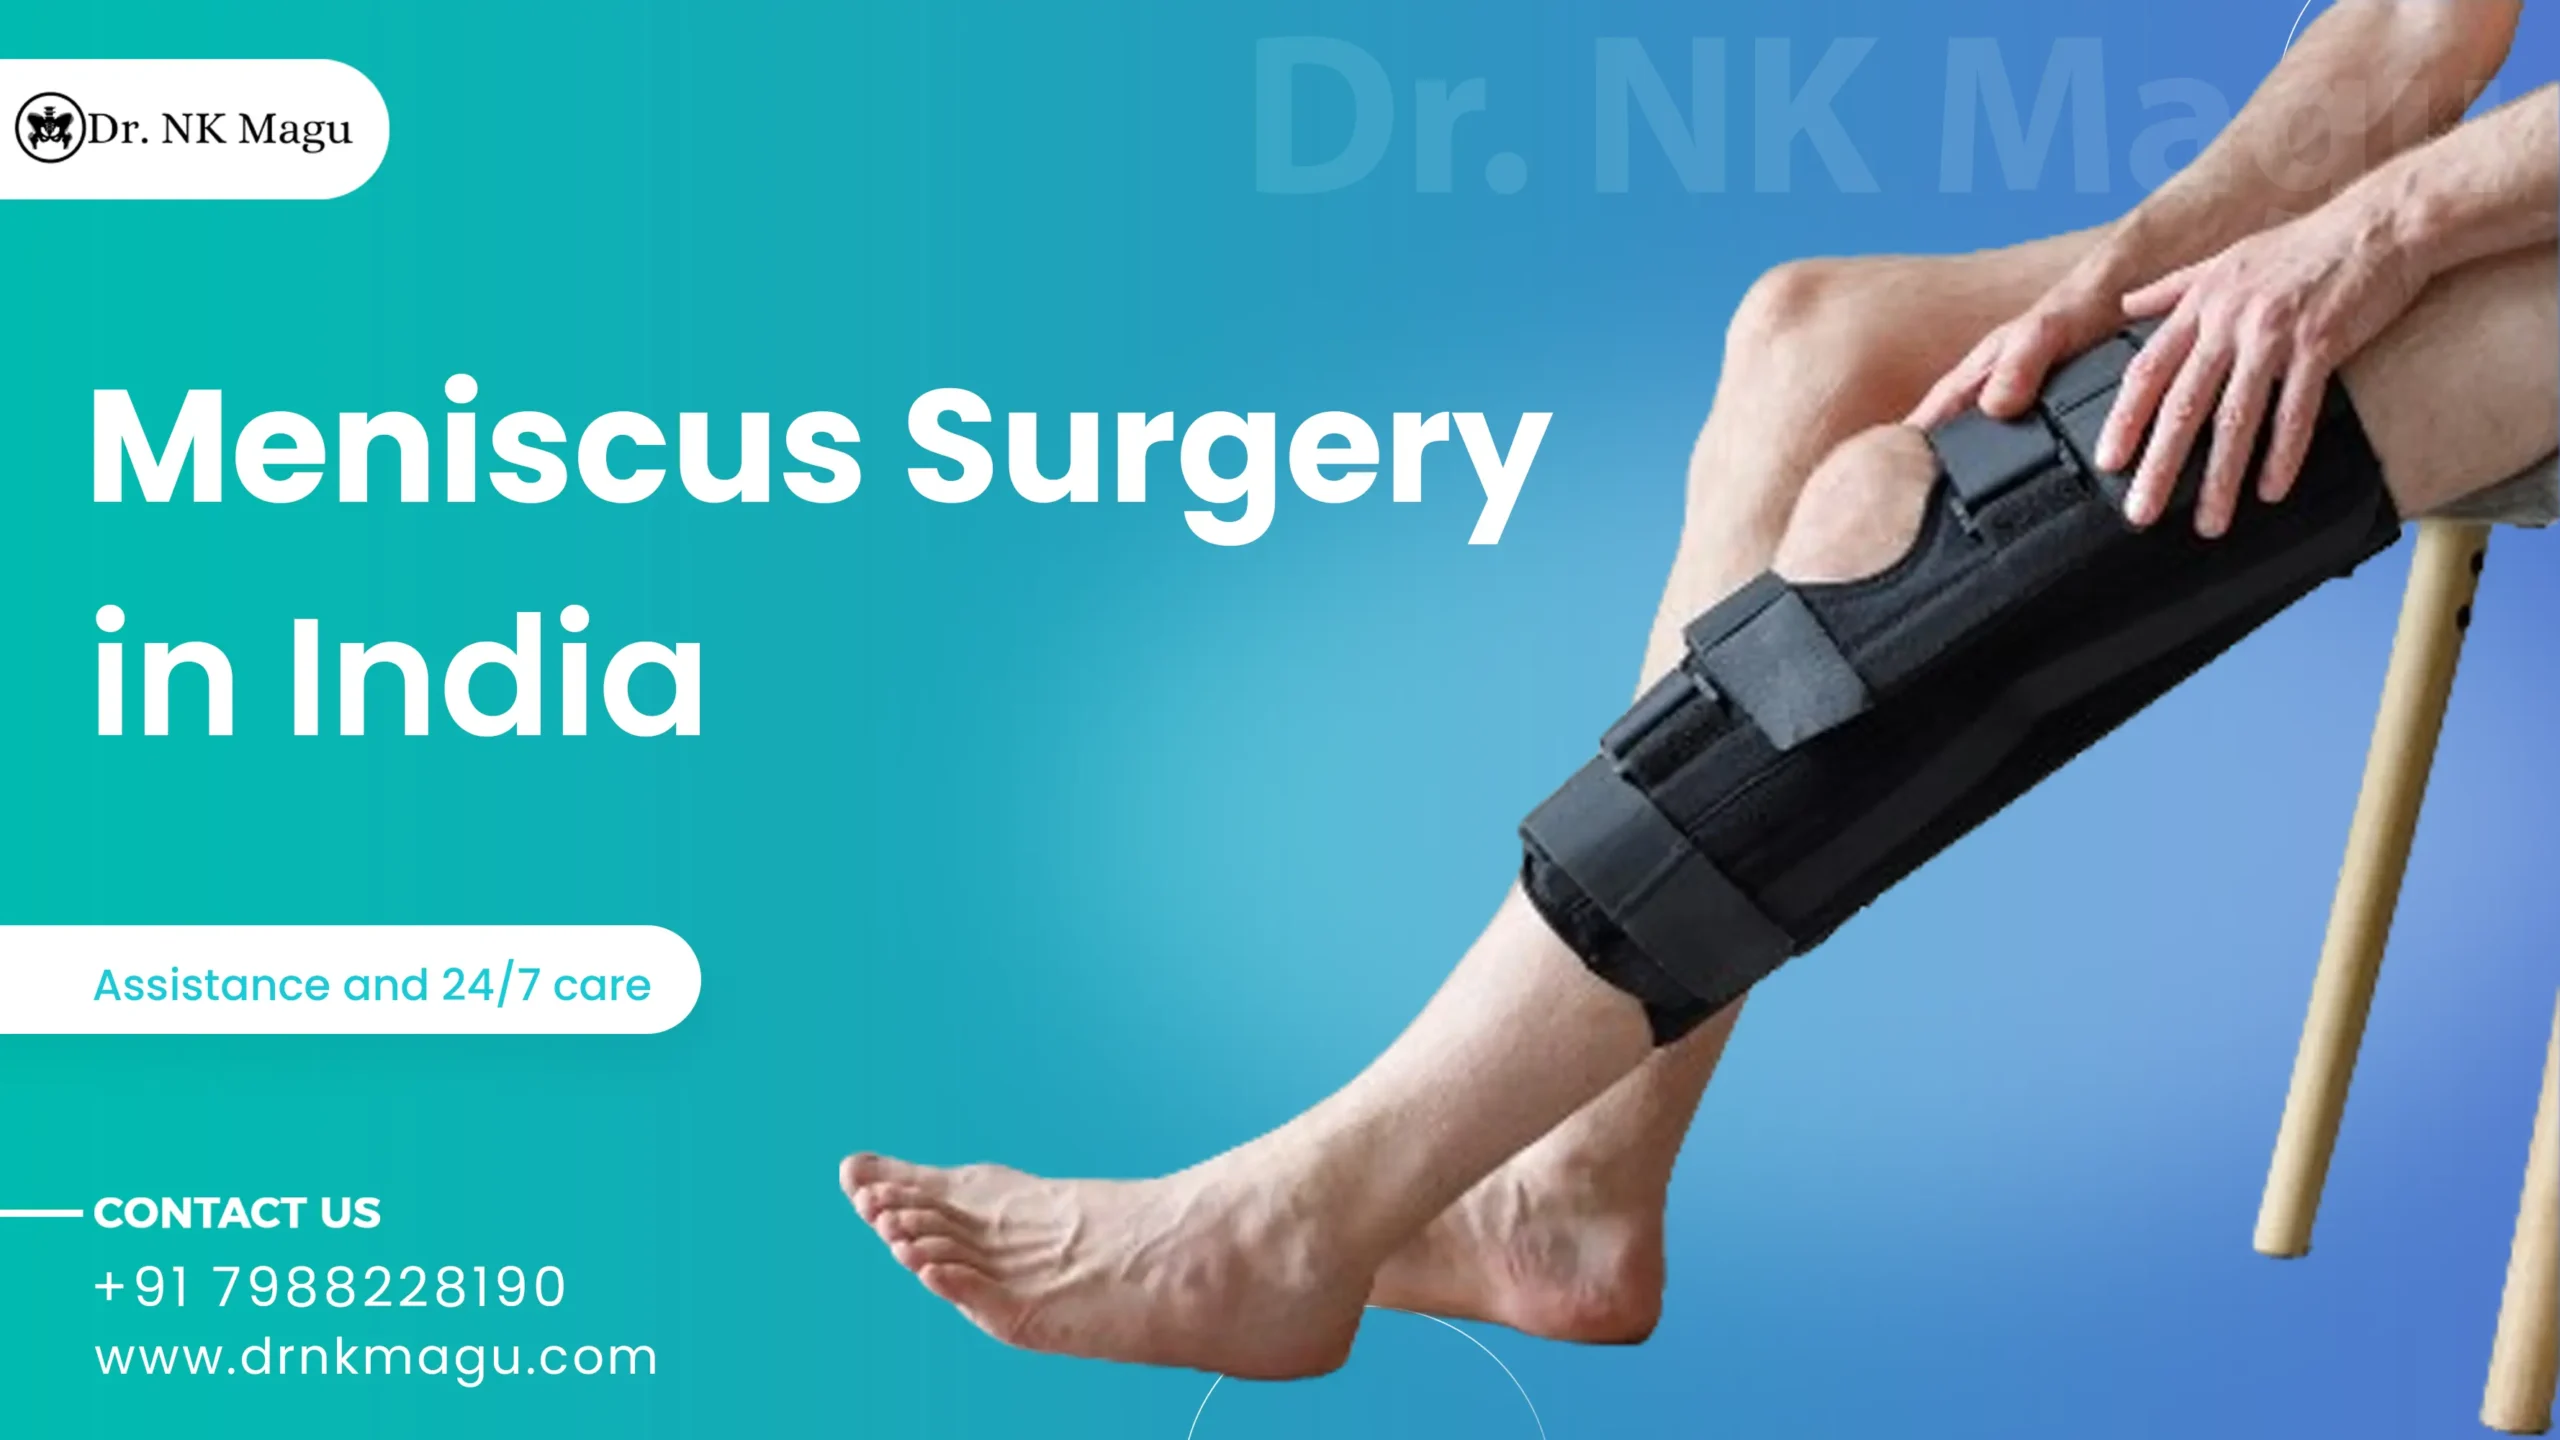 Meniscus surgery cost in India